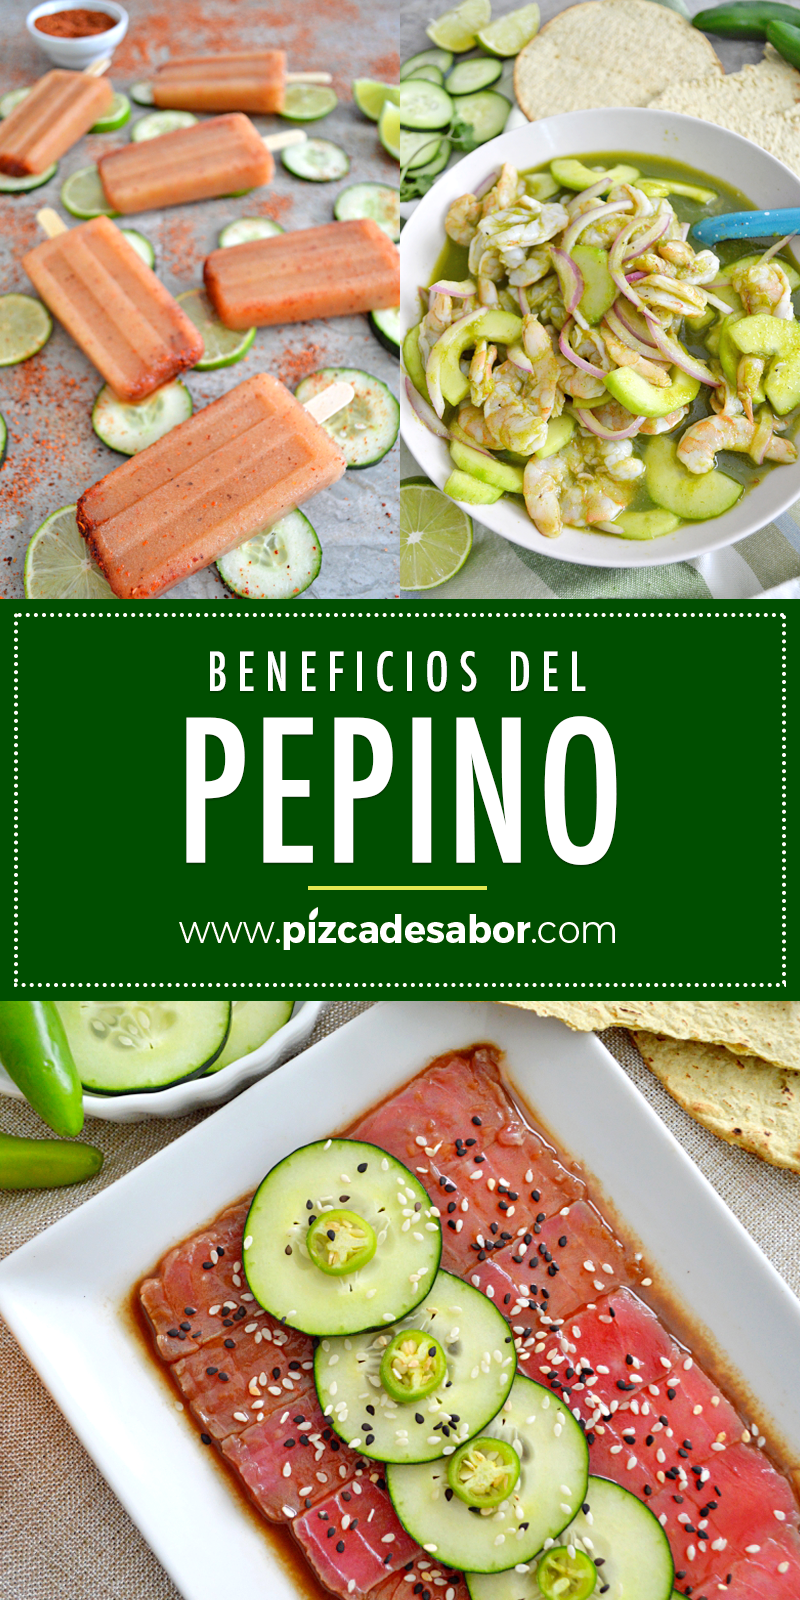 Pepino www.pizcadesabor.com